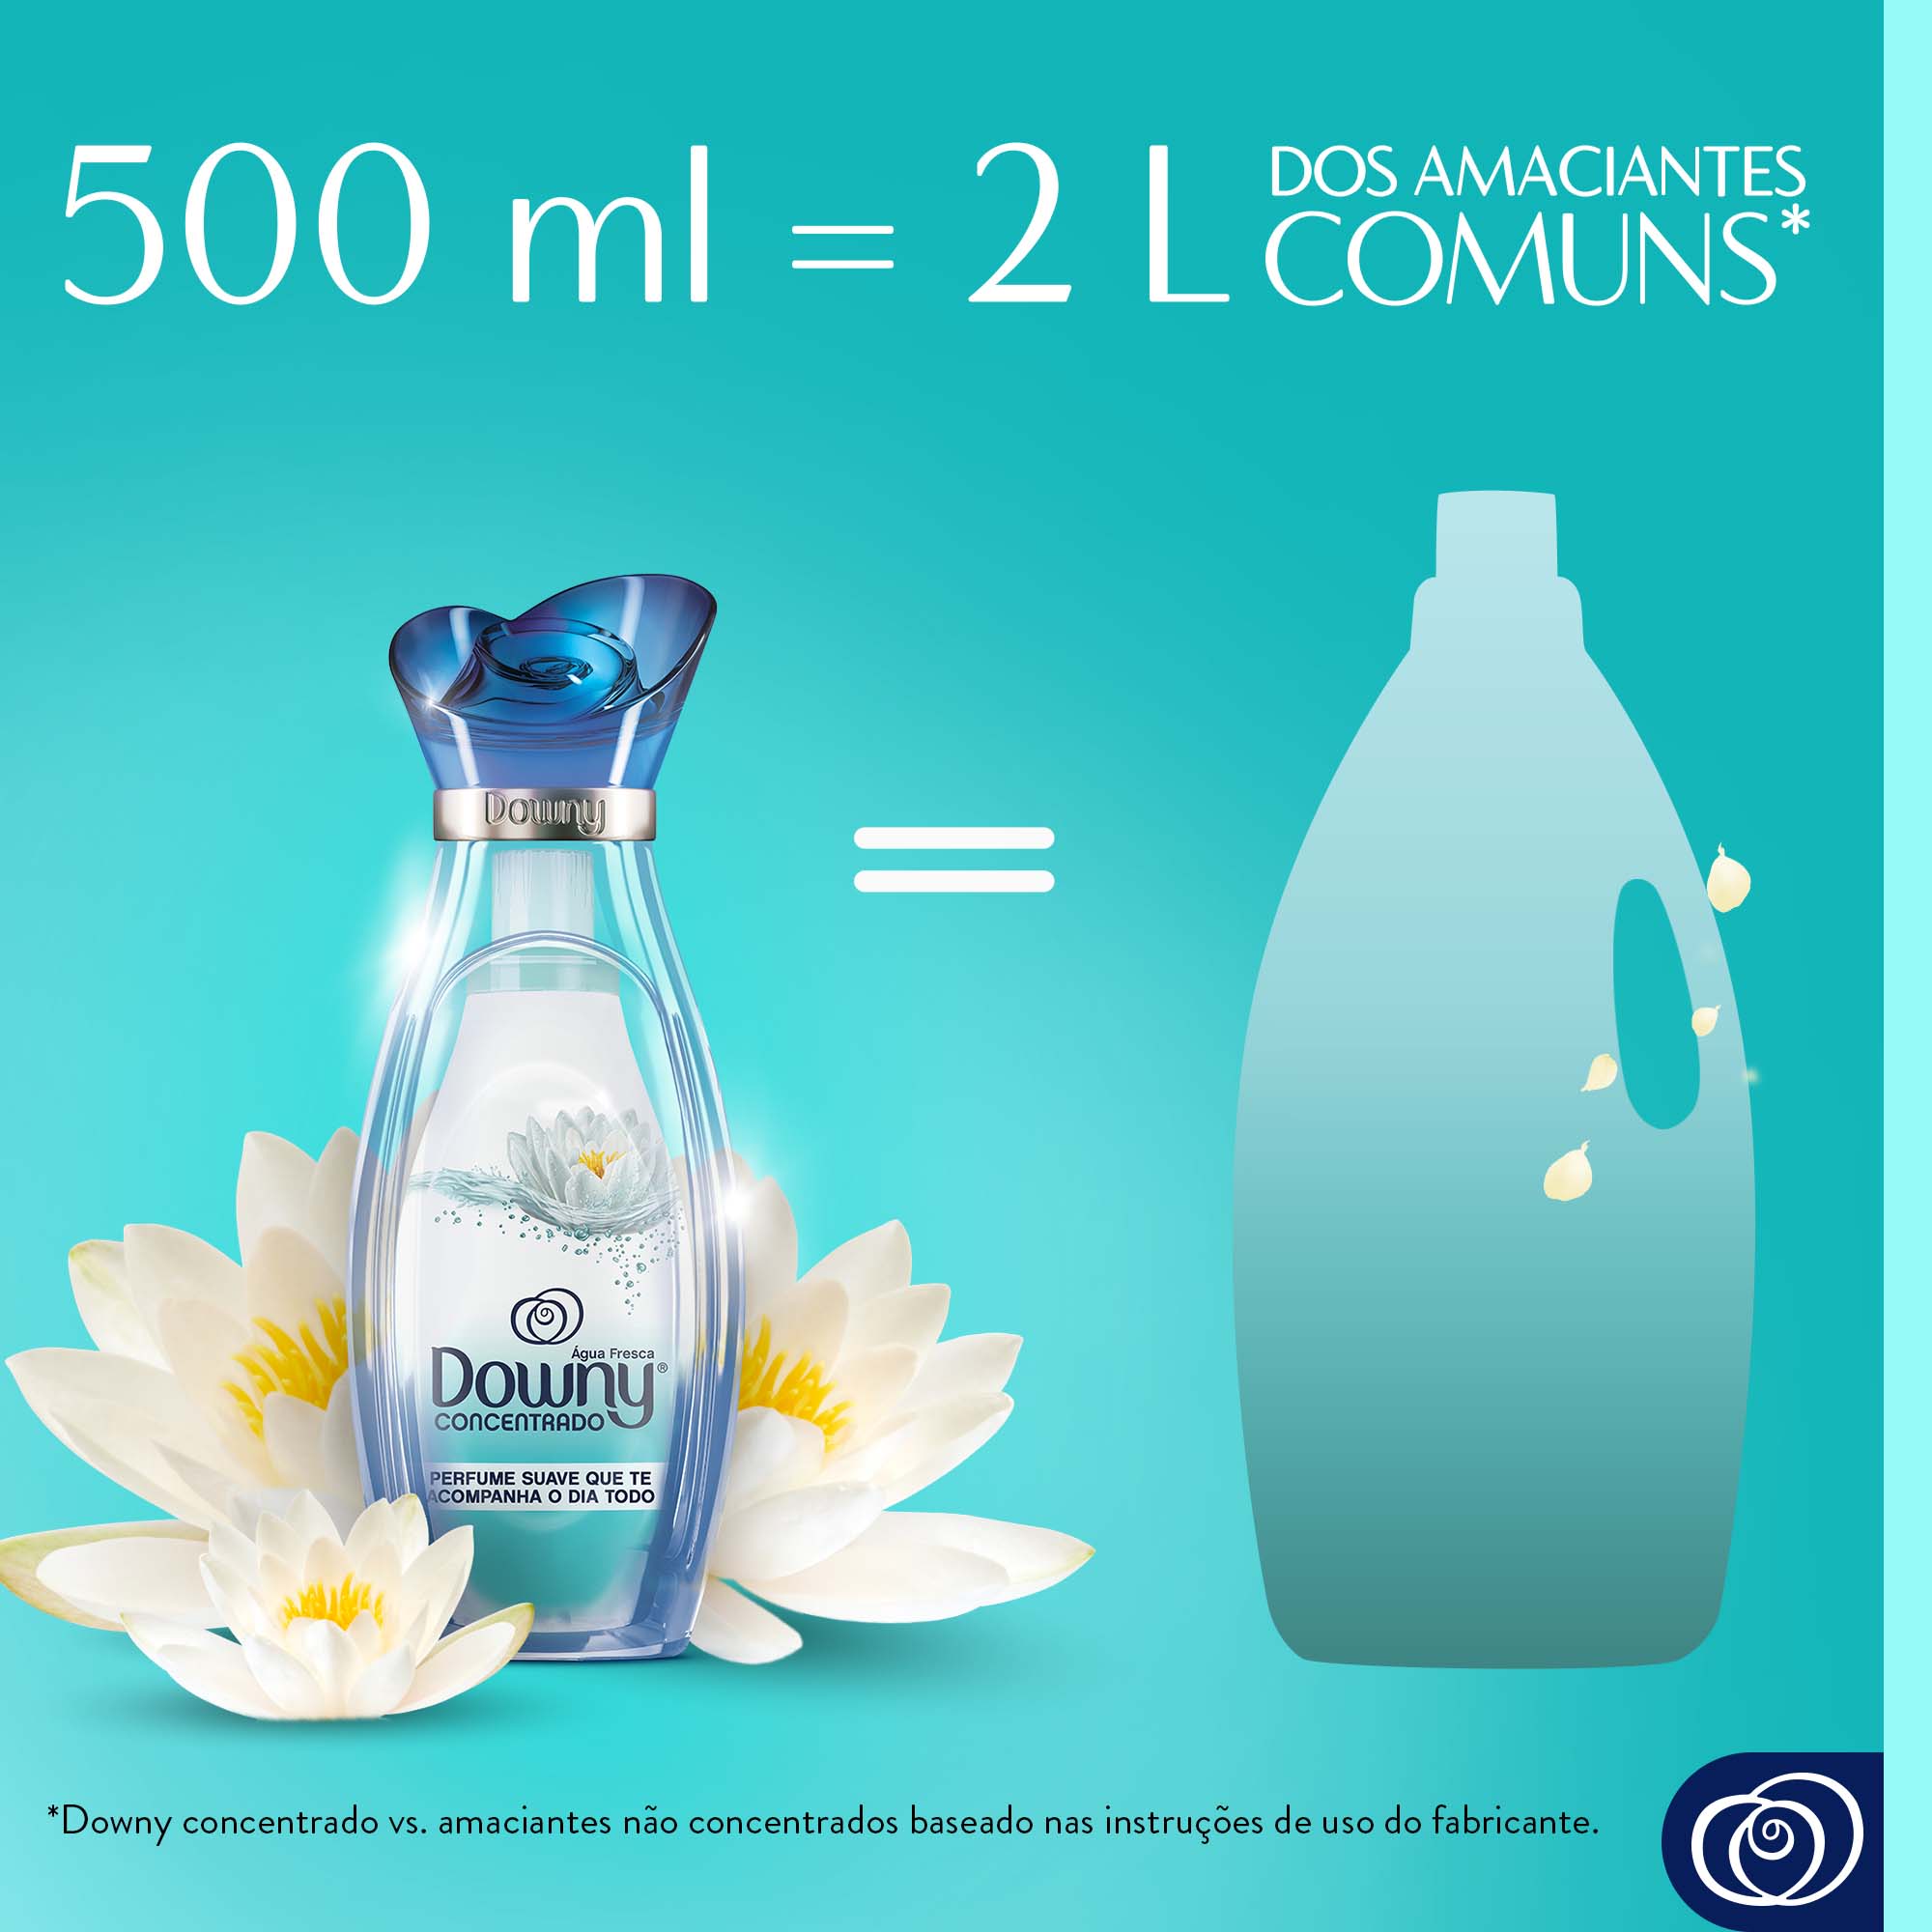 Amaciante Downy Água Fresca - 500 ml = 2L Dos Amaciantes Comuns